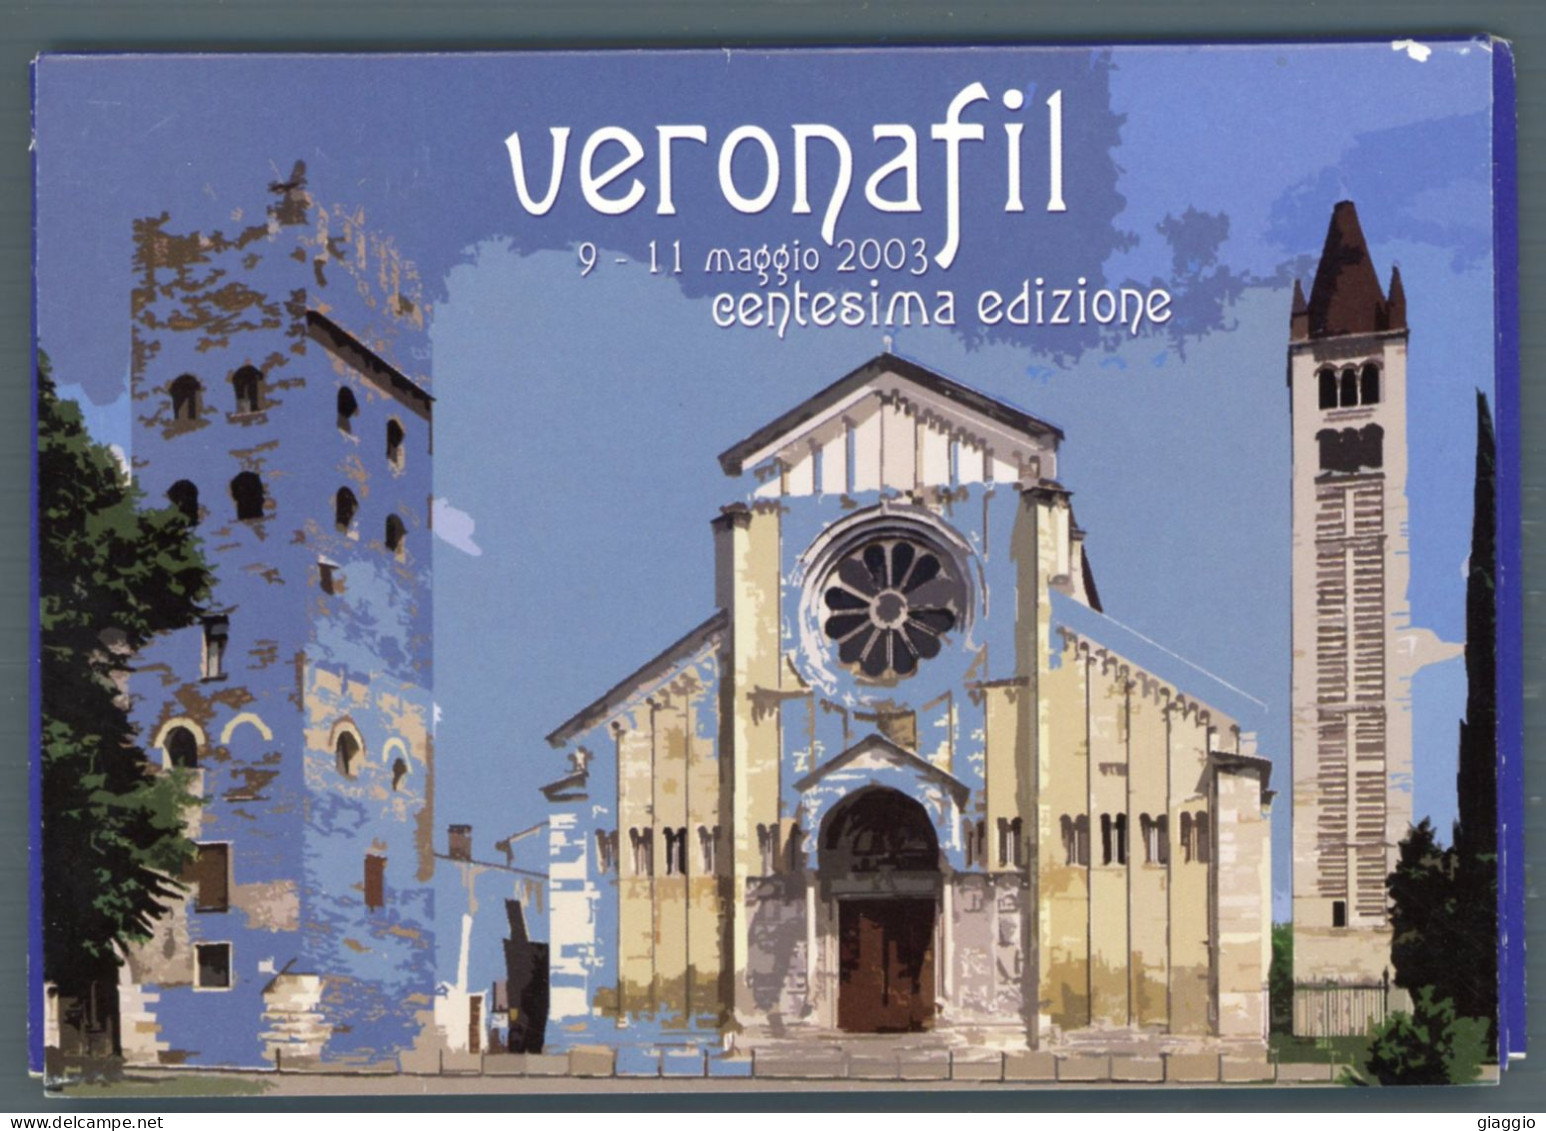 °°° Francobolli - N. 1874 - Vaticano Cartoline Postali Veronafil °°° - Ganzsachen